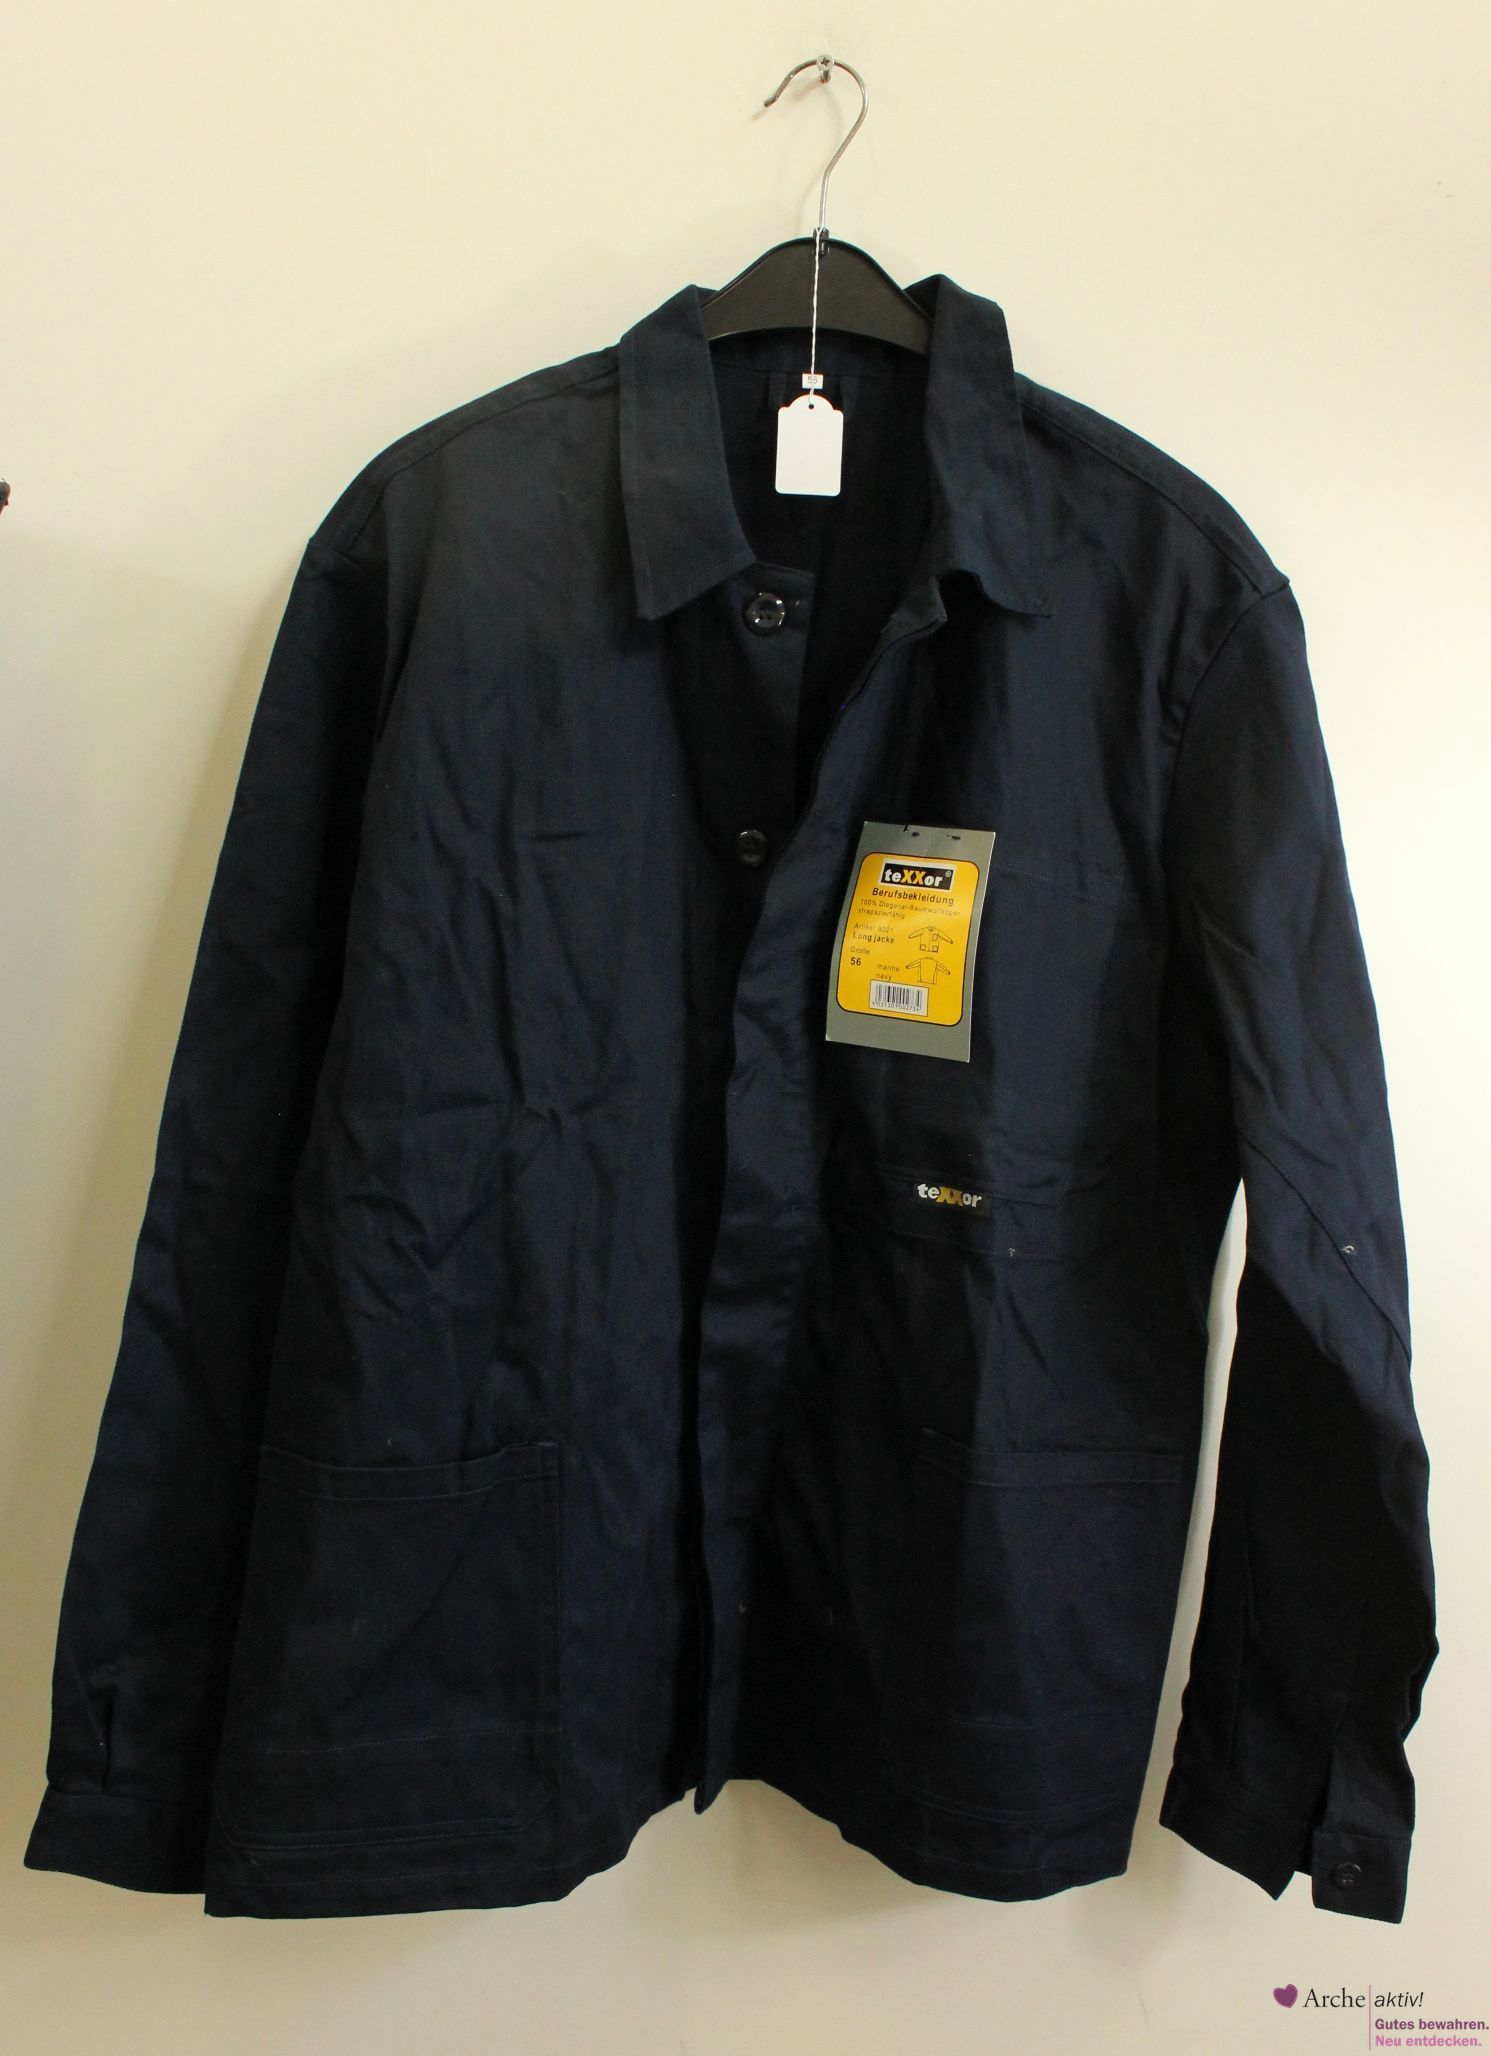 Long Jacke von Texxor - Berufsbekleidung - Größe 56 - neuwertig 